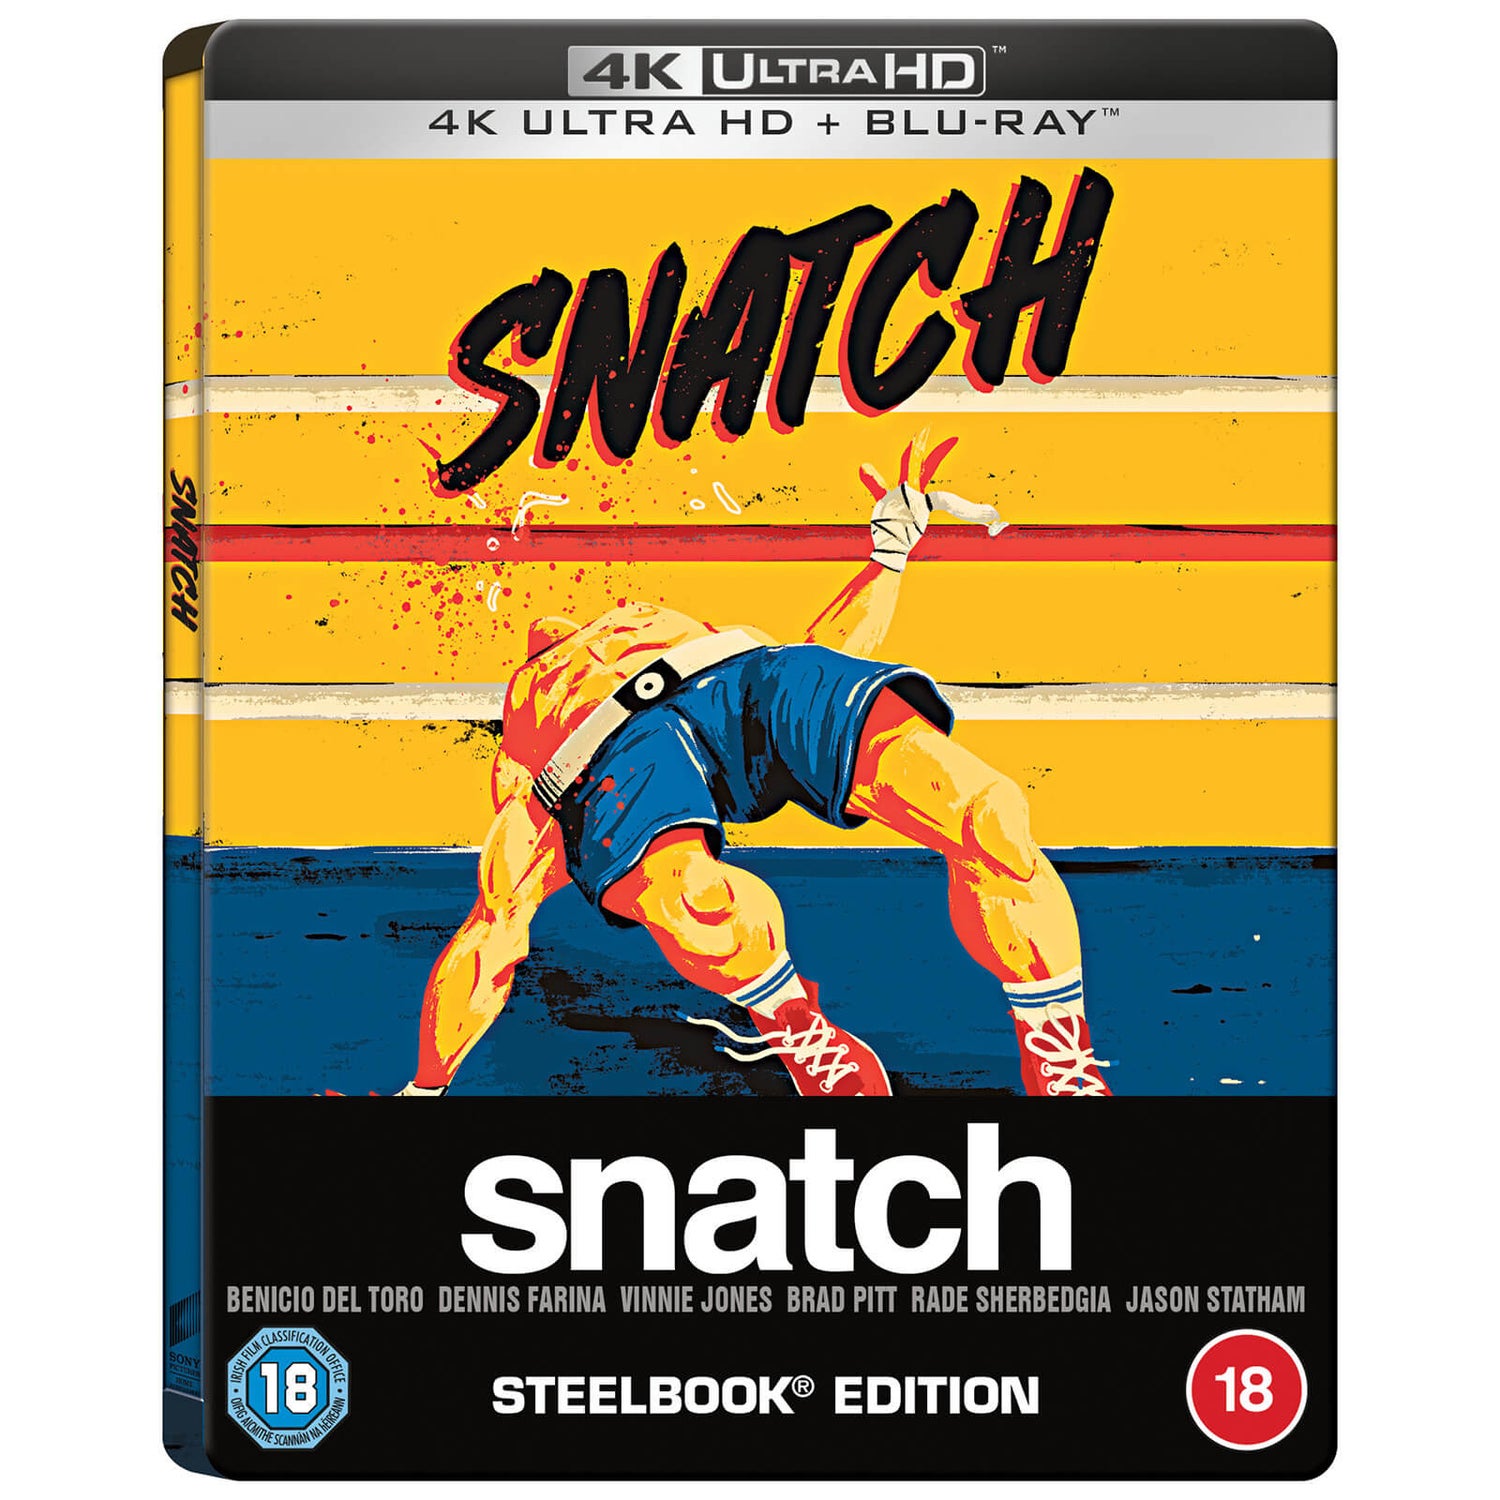 Snatch, tu braques ou tu raques (2000) - Coffret Exclusivité Zavvi 20e anniversaire 4K Ultra HD (Blu-ray inclus)